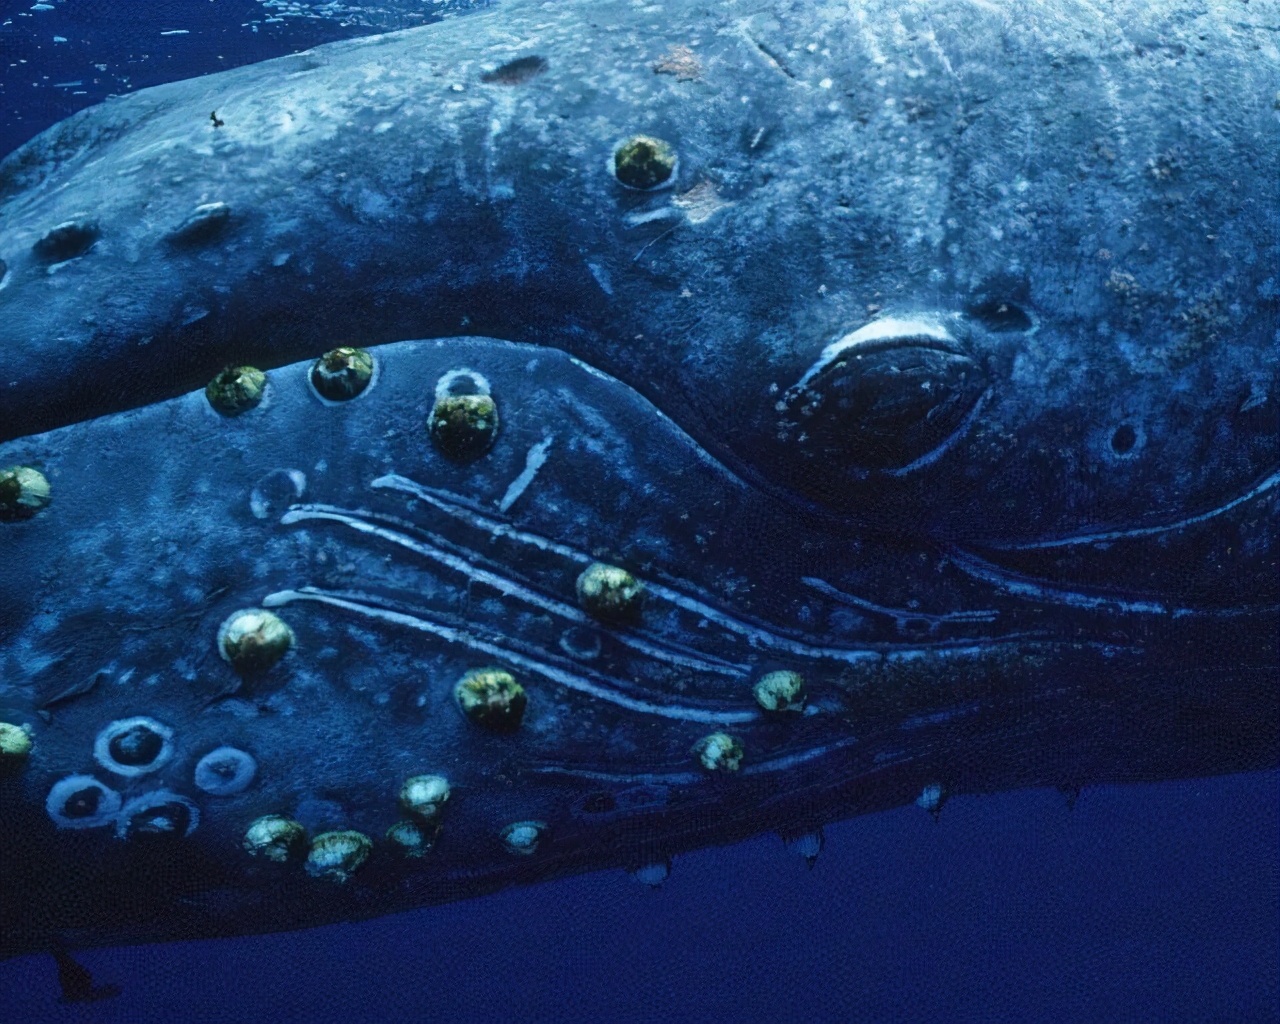 鲸隐私部位都寄生了藤壶，它不疼吗？这个..会影响它们交配吗？